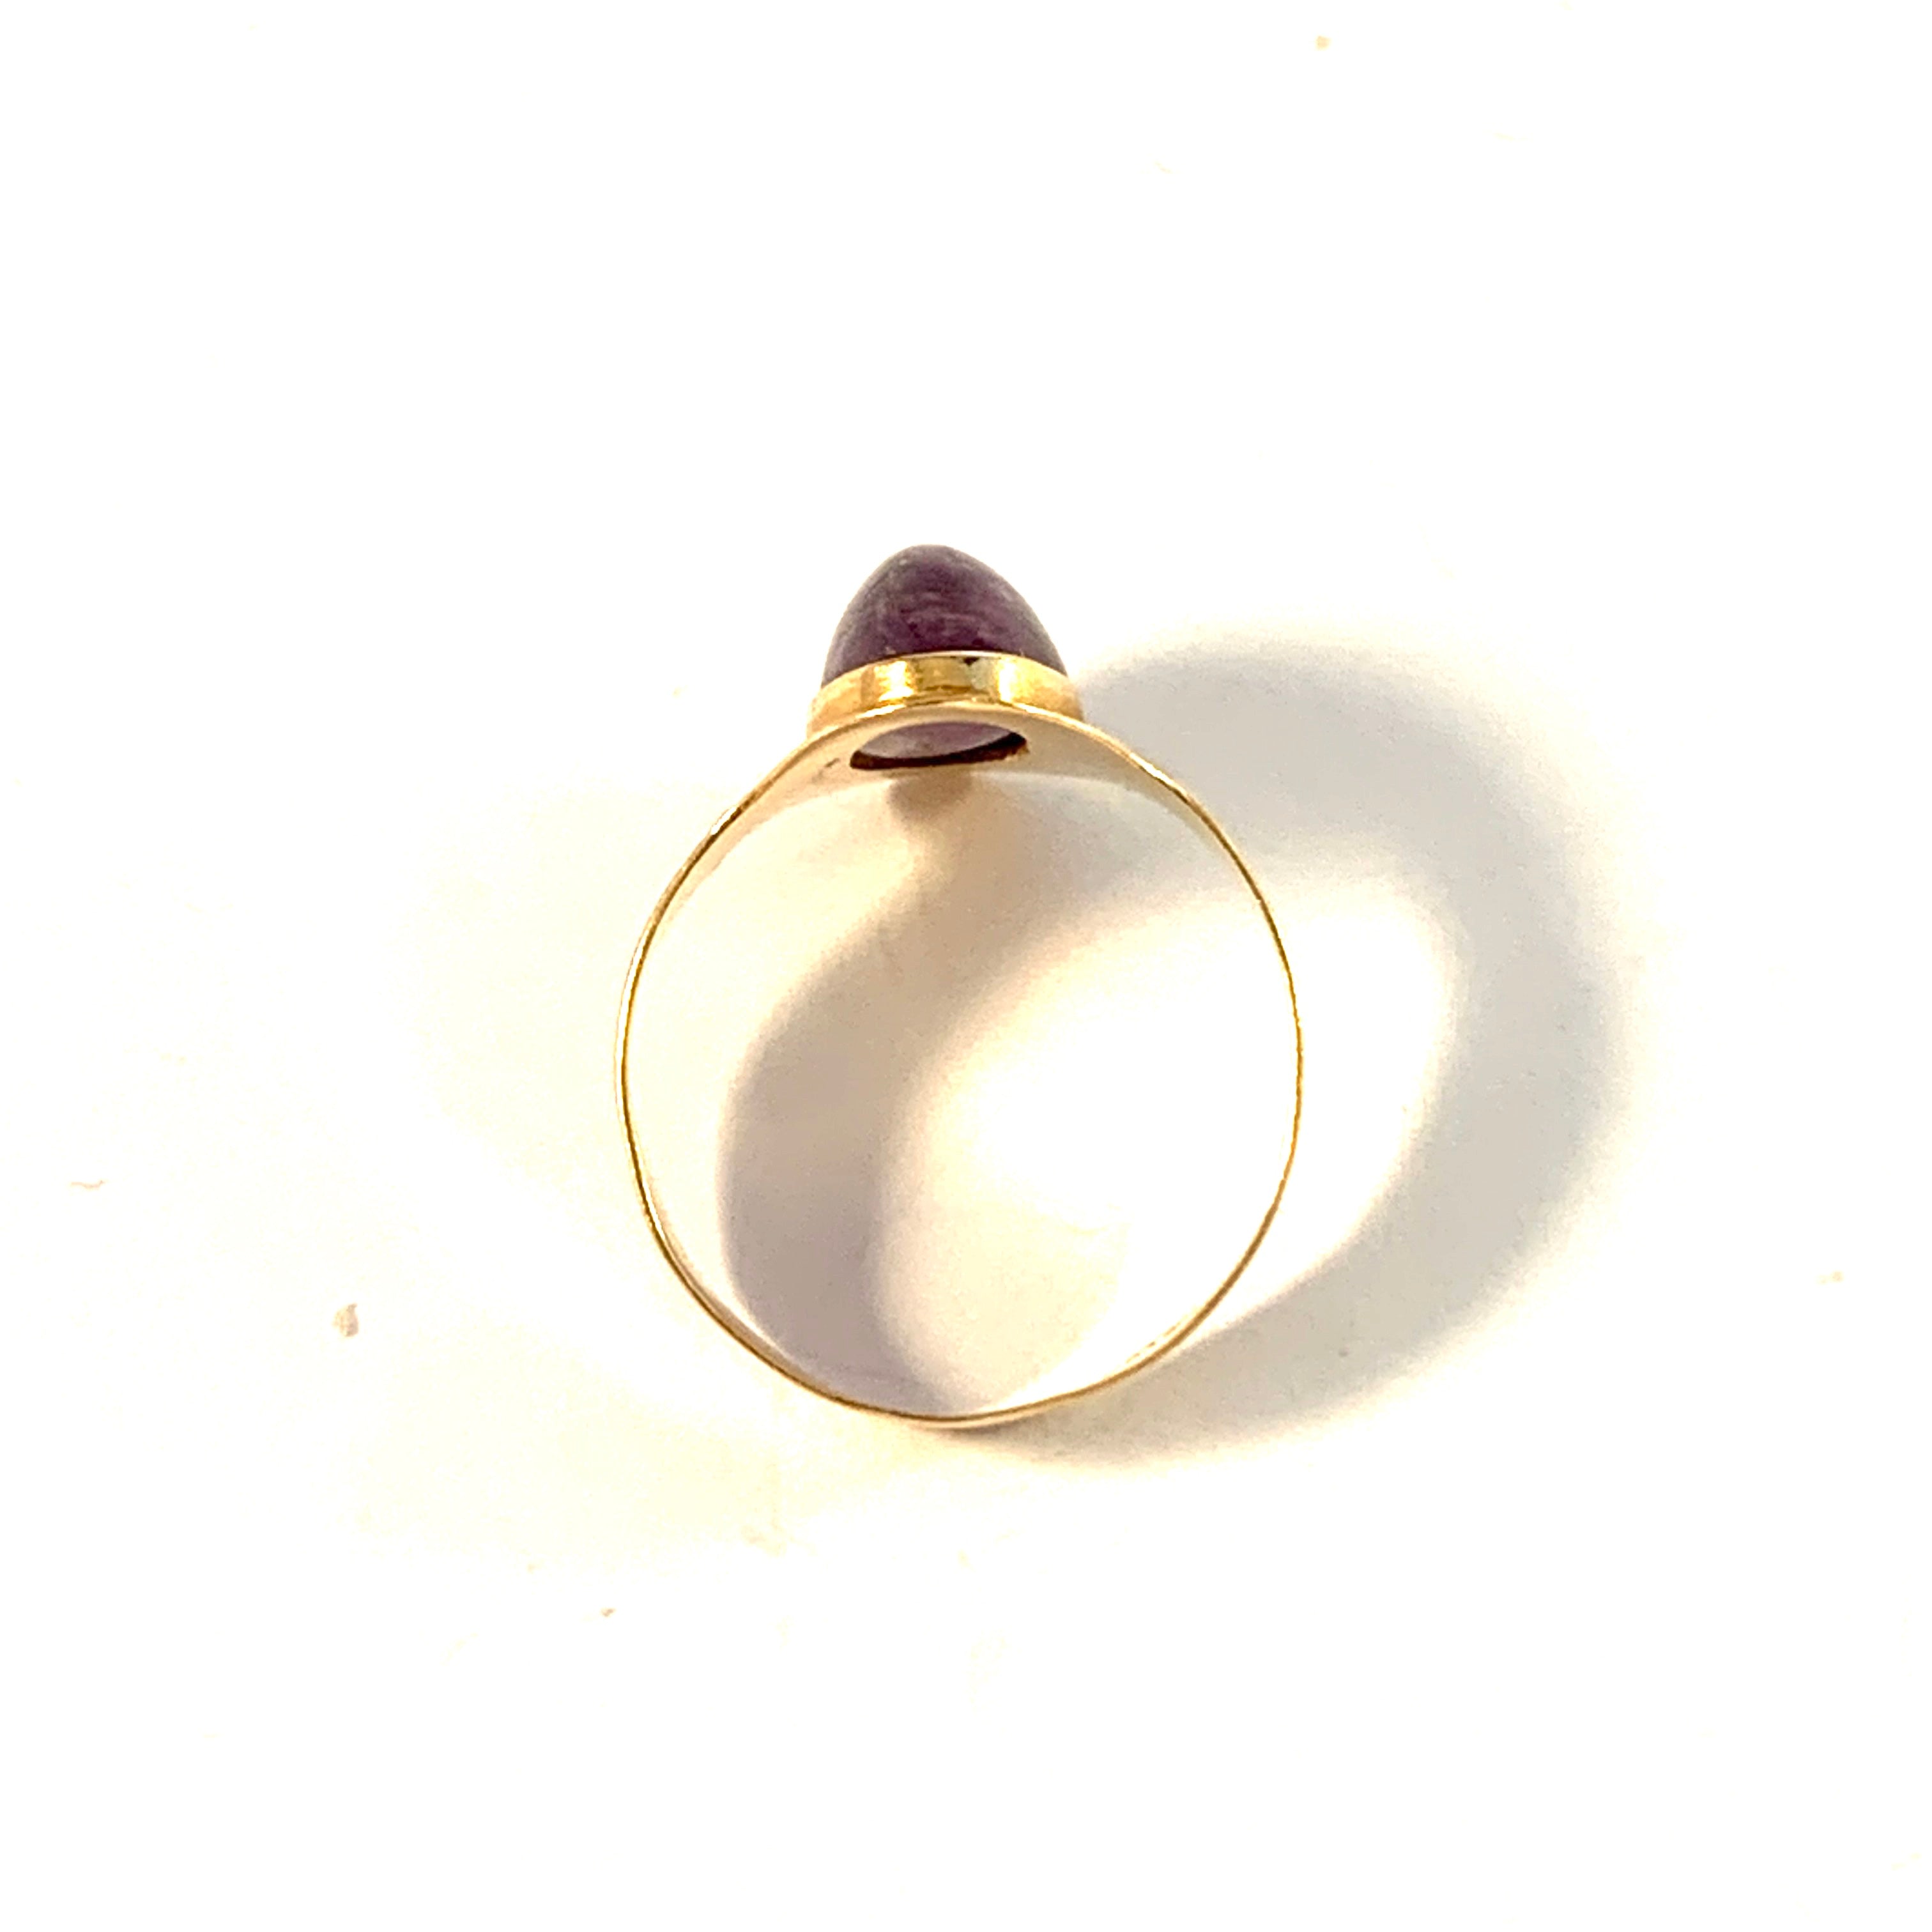 Arne Larsson, Sweden 1961. Vintage 18k Gold Amethyst Ring.